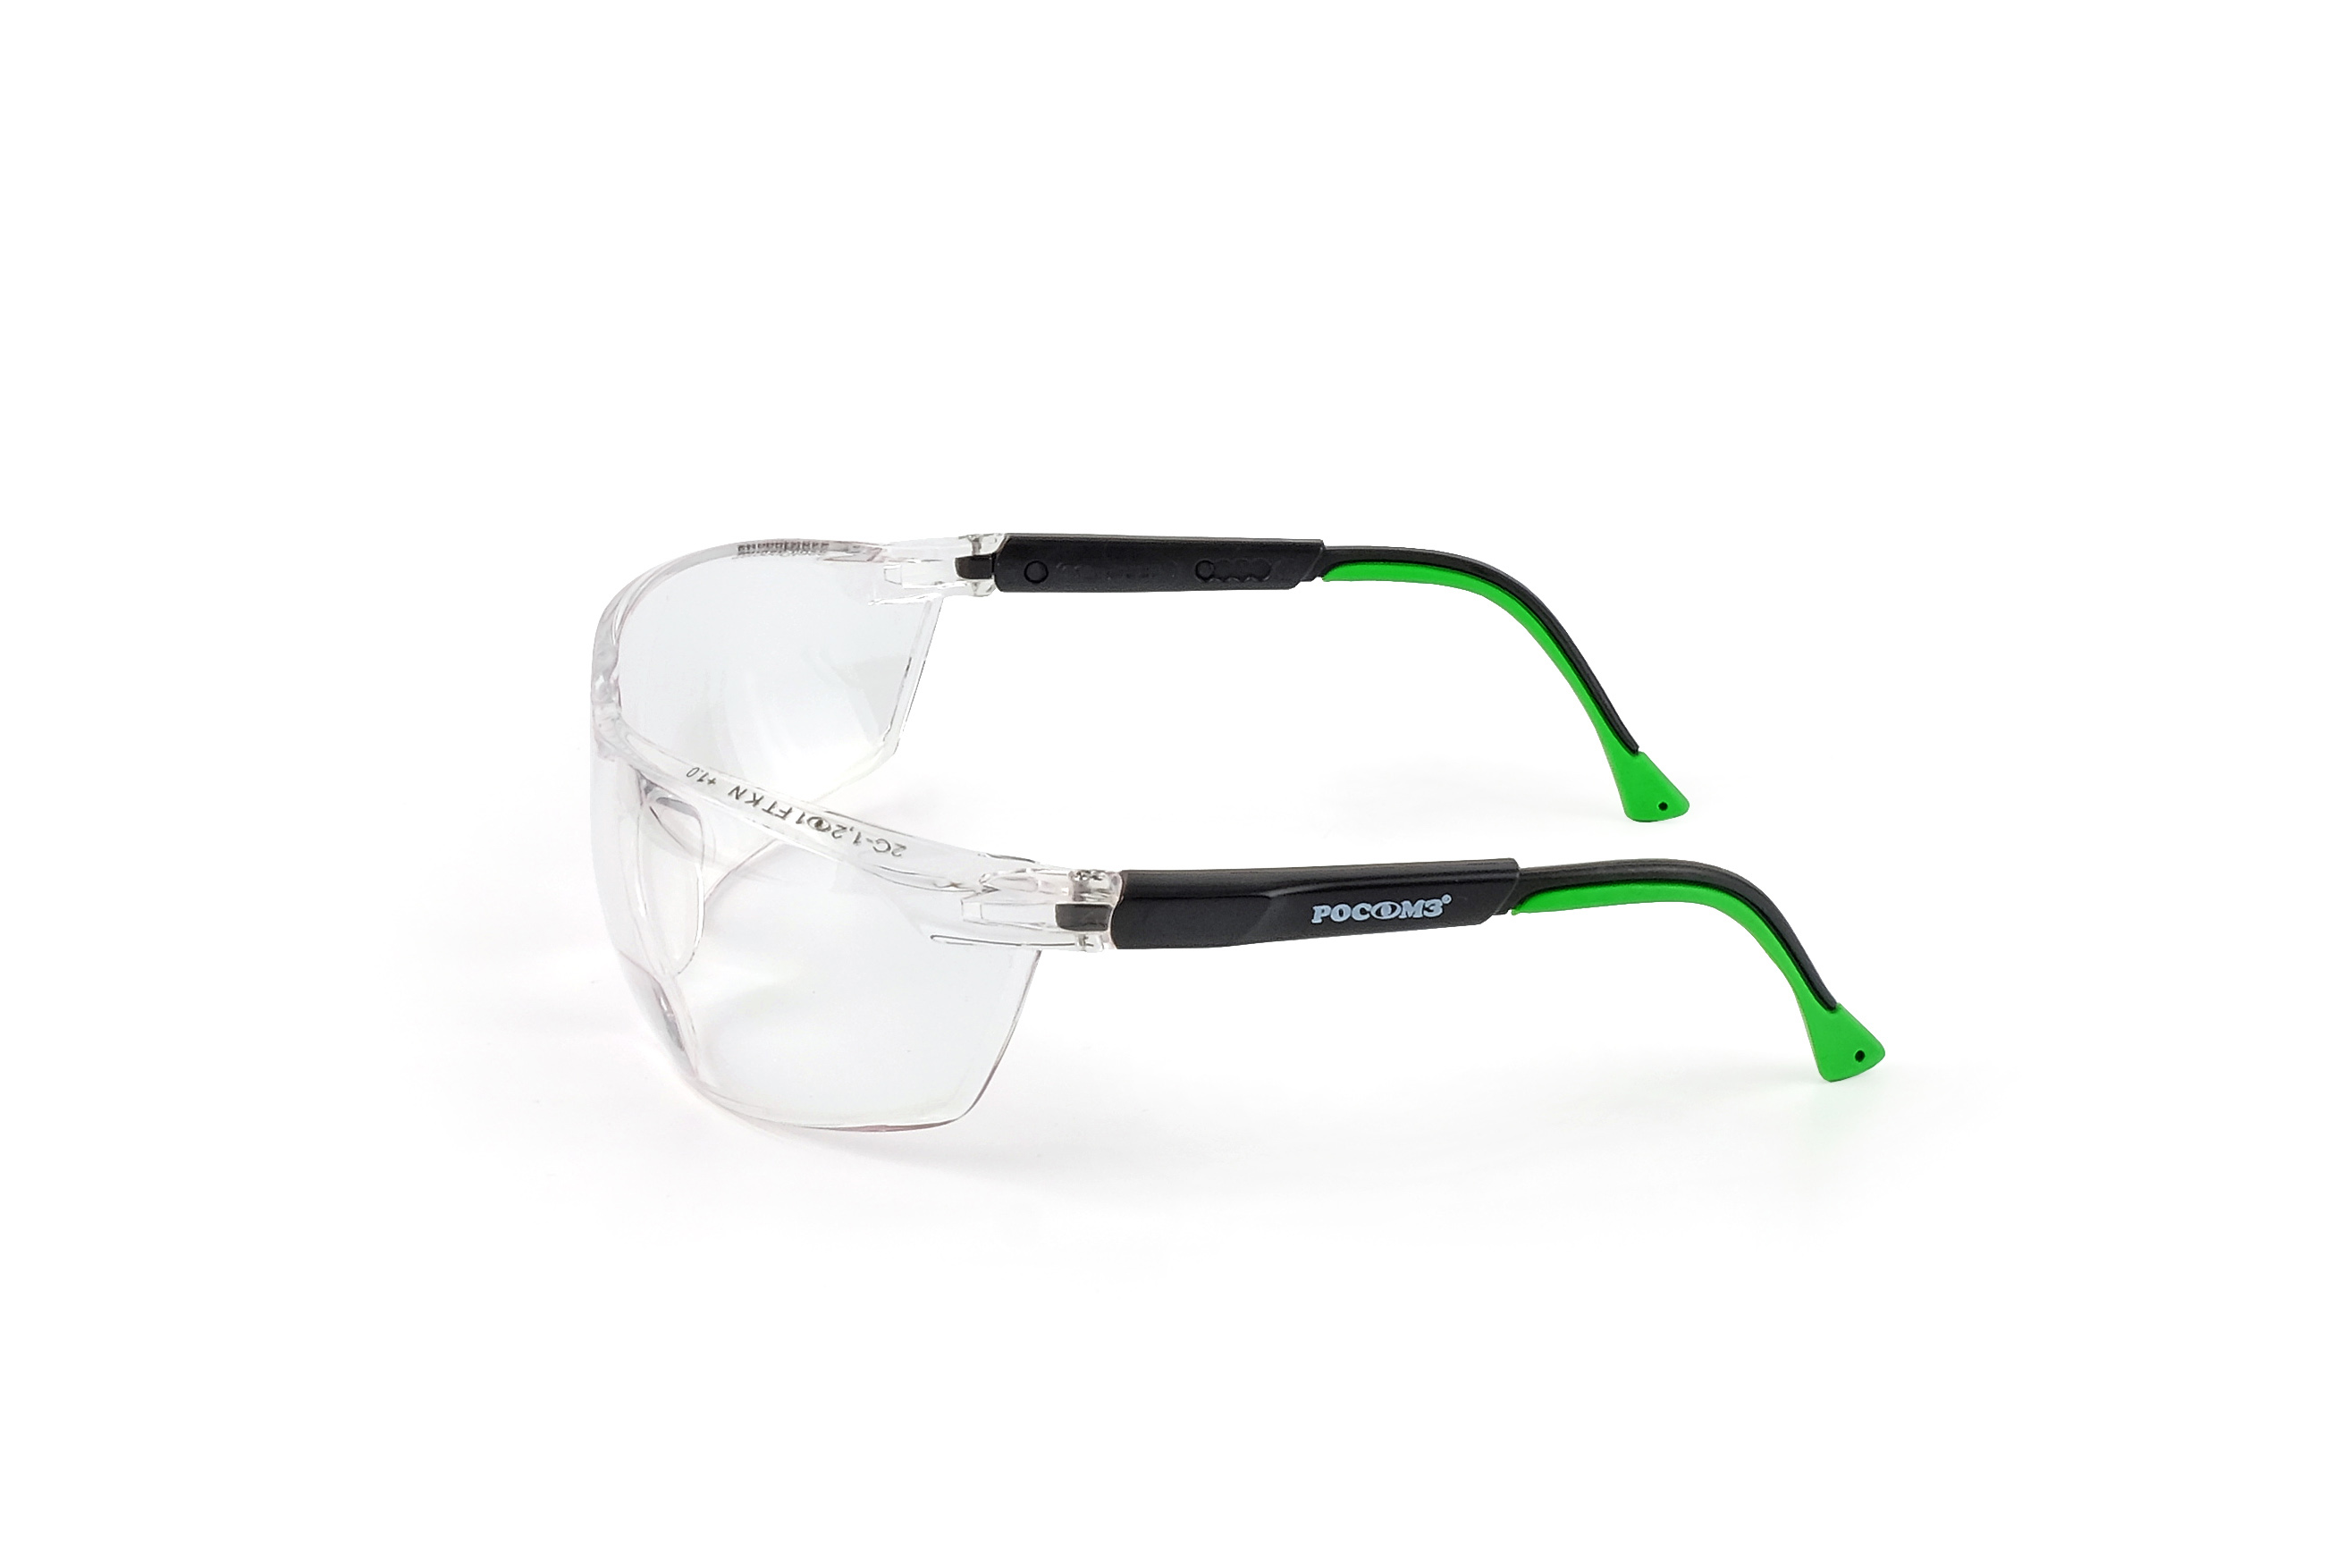 О78 АБСОЛЮТ plus Strong Glass (2С-1,2 PC) очки защитные открытые (рефракция +1,0 дптр)